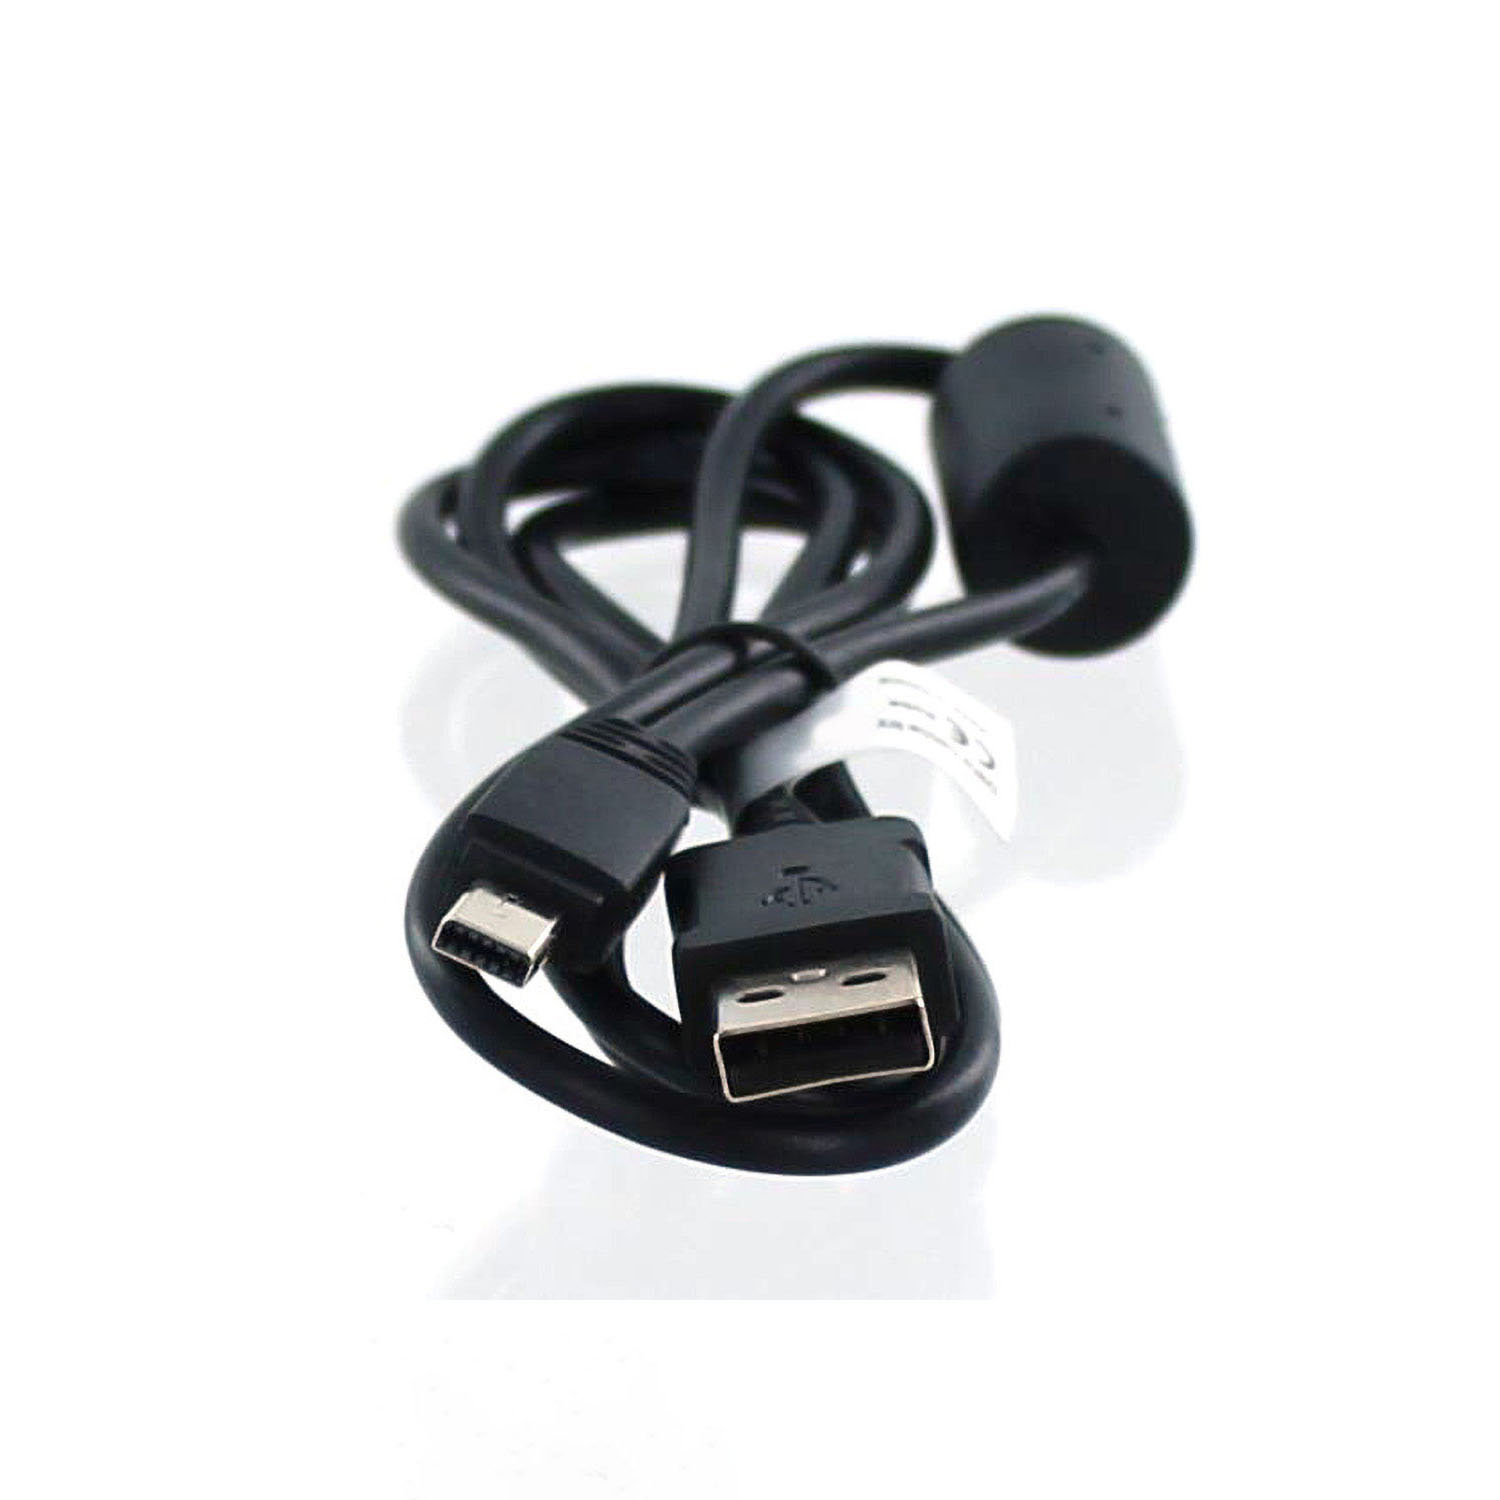 mit schwarz Casio MOBILOTEC kompatibel Zubehör EMC-6 USB-Datenkabel Casio,